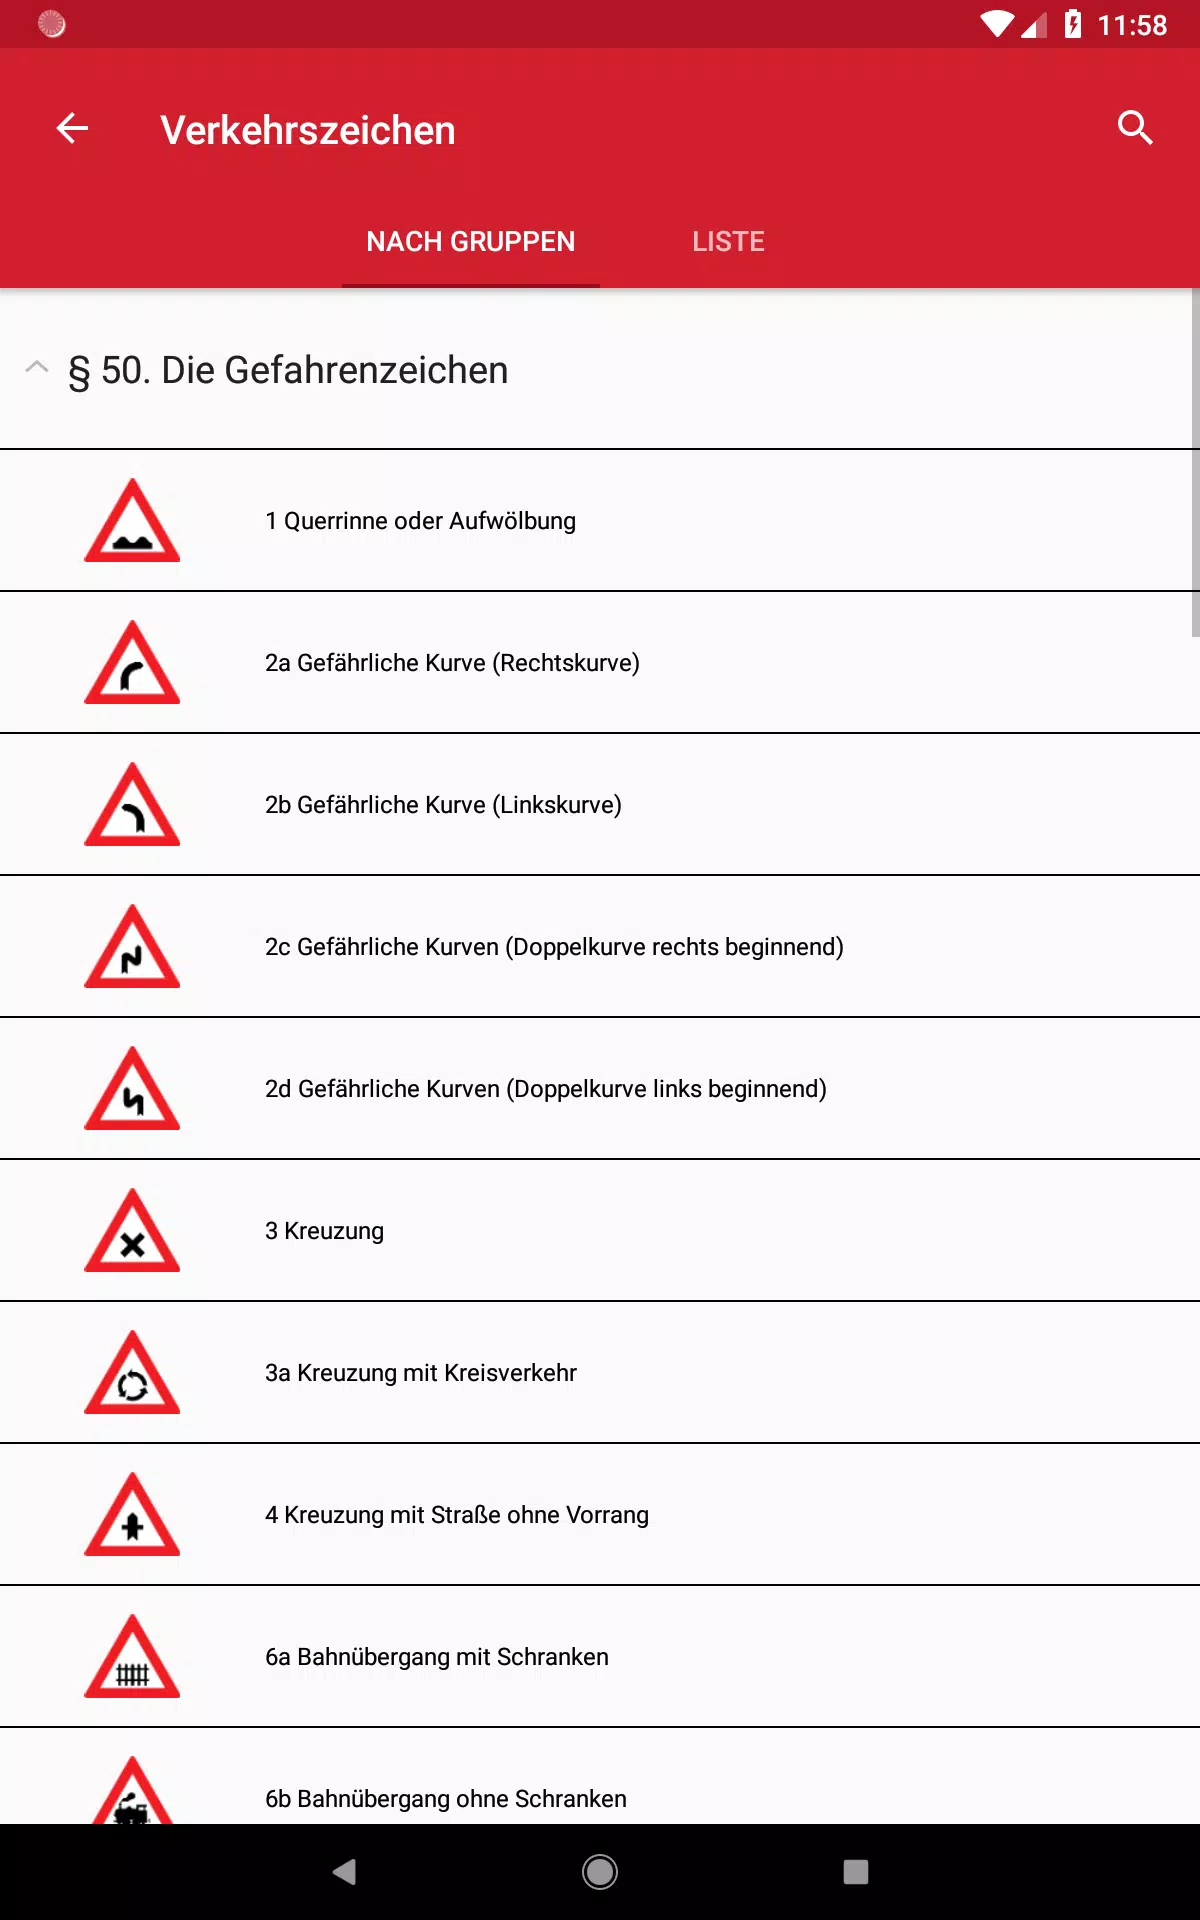 Verkehrszeichen APK for Android Download